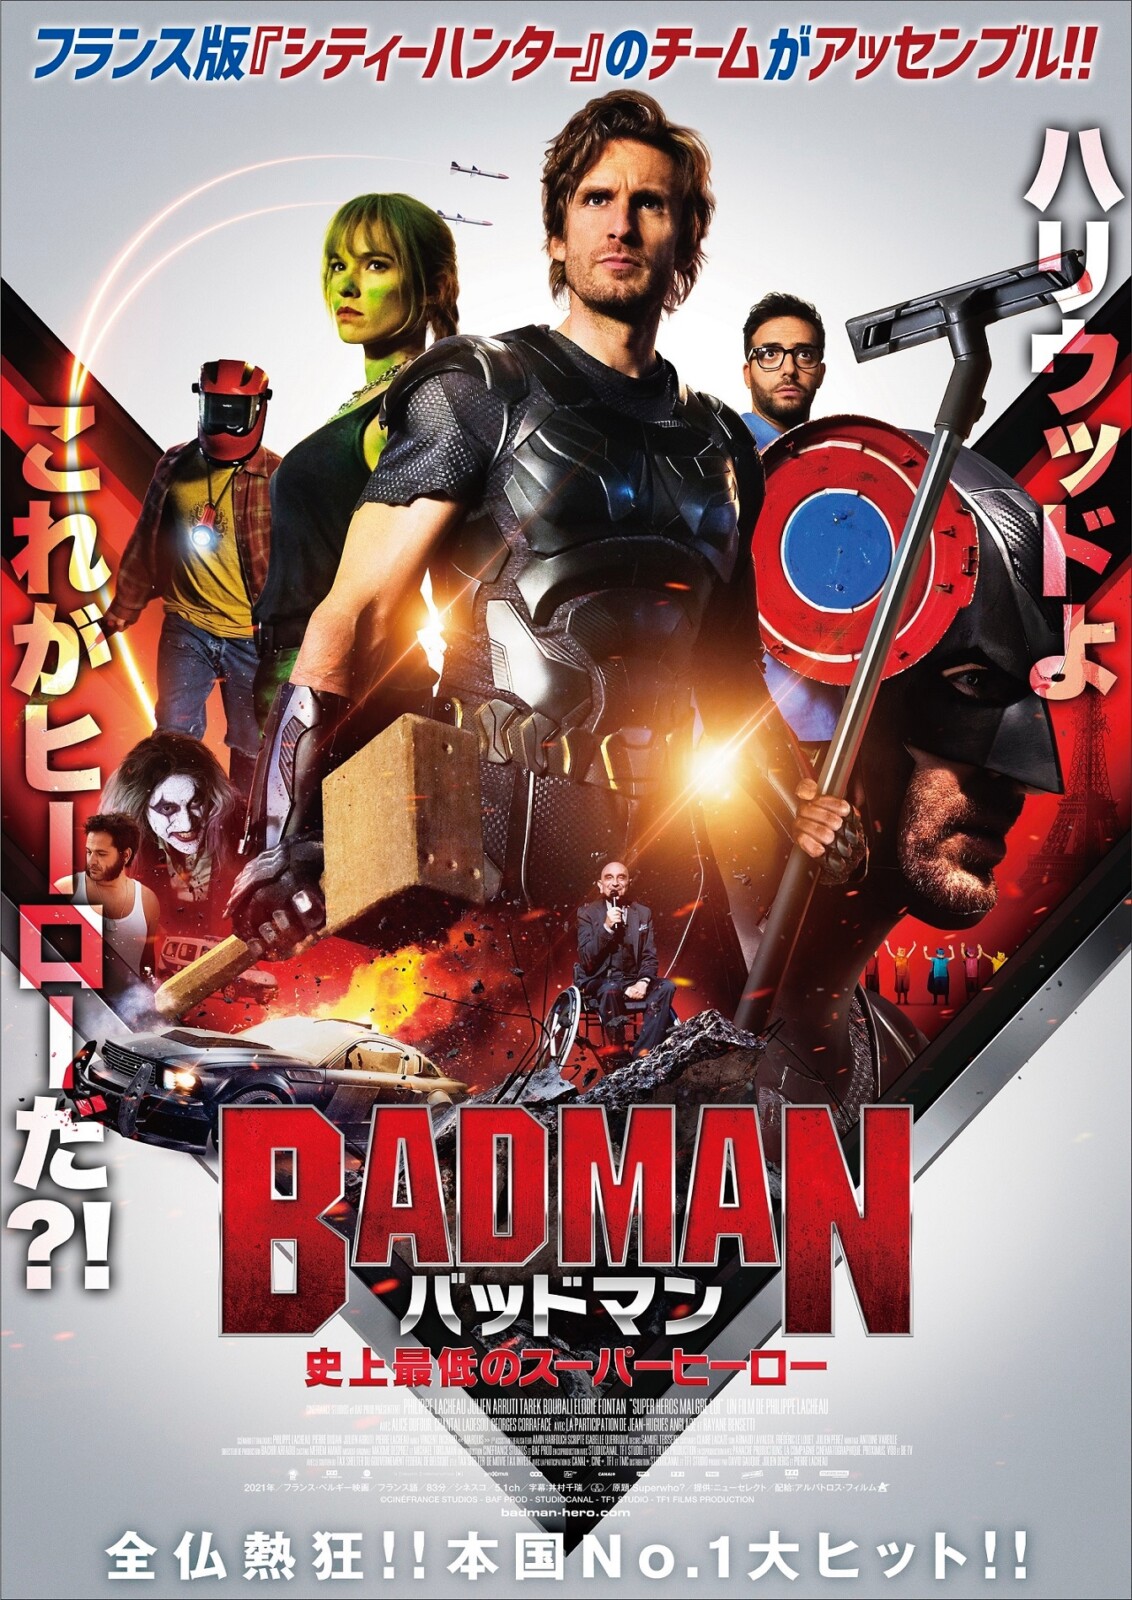 バッドマン 史上最低のスーパーヒーロー 7月15日公開決定 日本版ポスターが解禁 Fan S Voice ファンズボイス